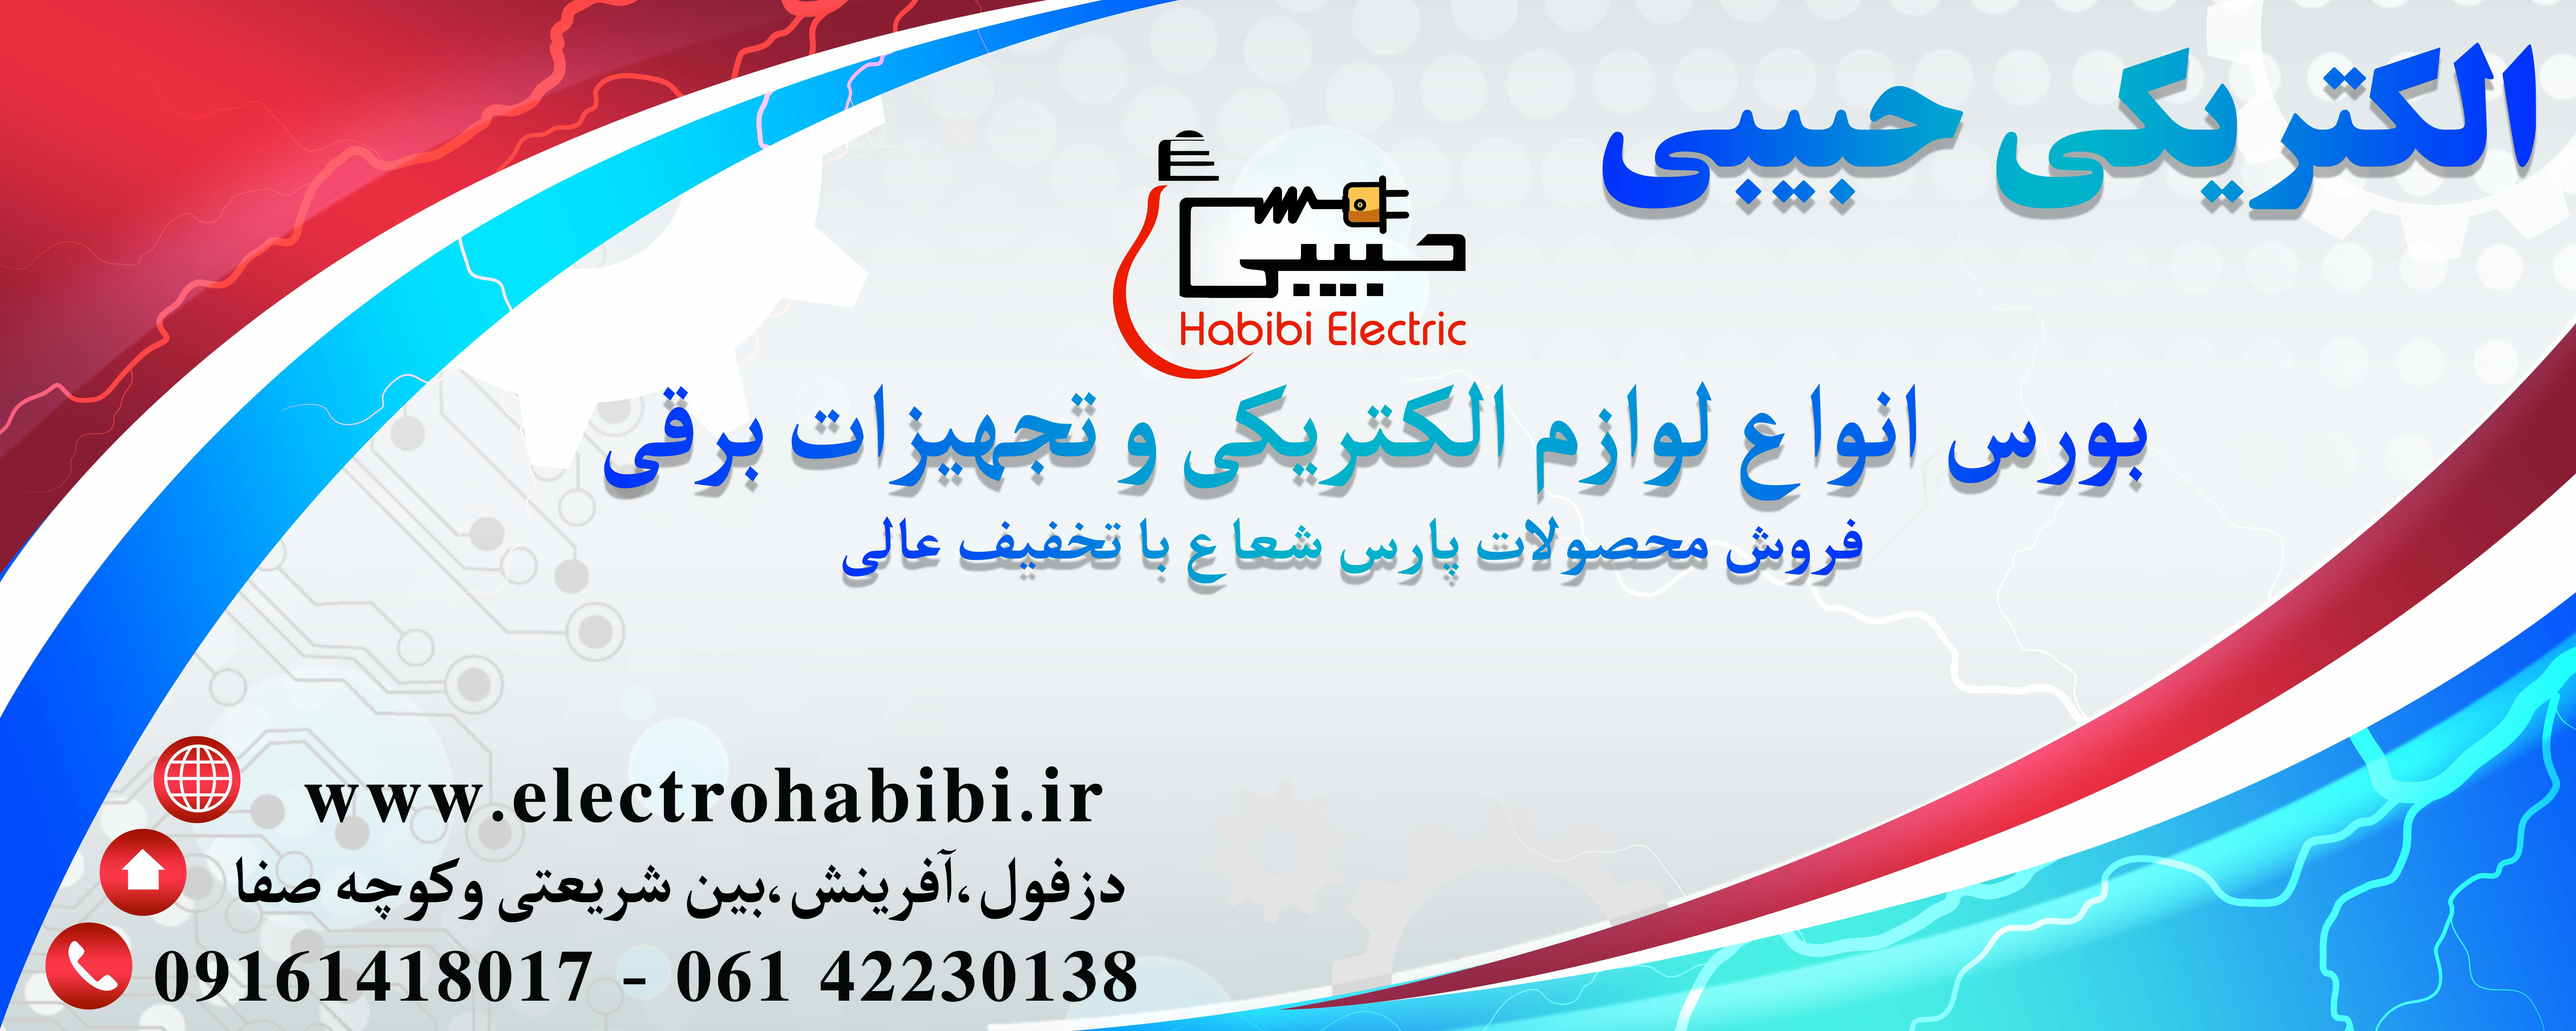 www.electrohabibi.ir